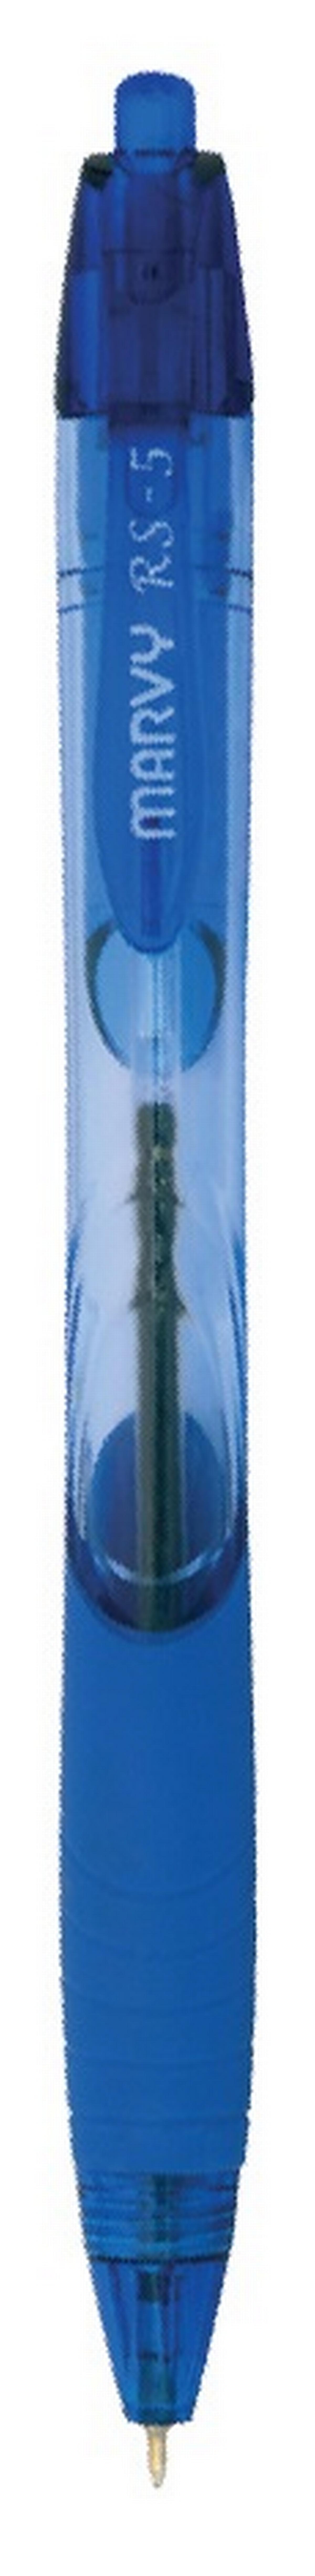 Στυλό διαρκείας RS5 μπλε